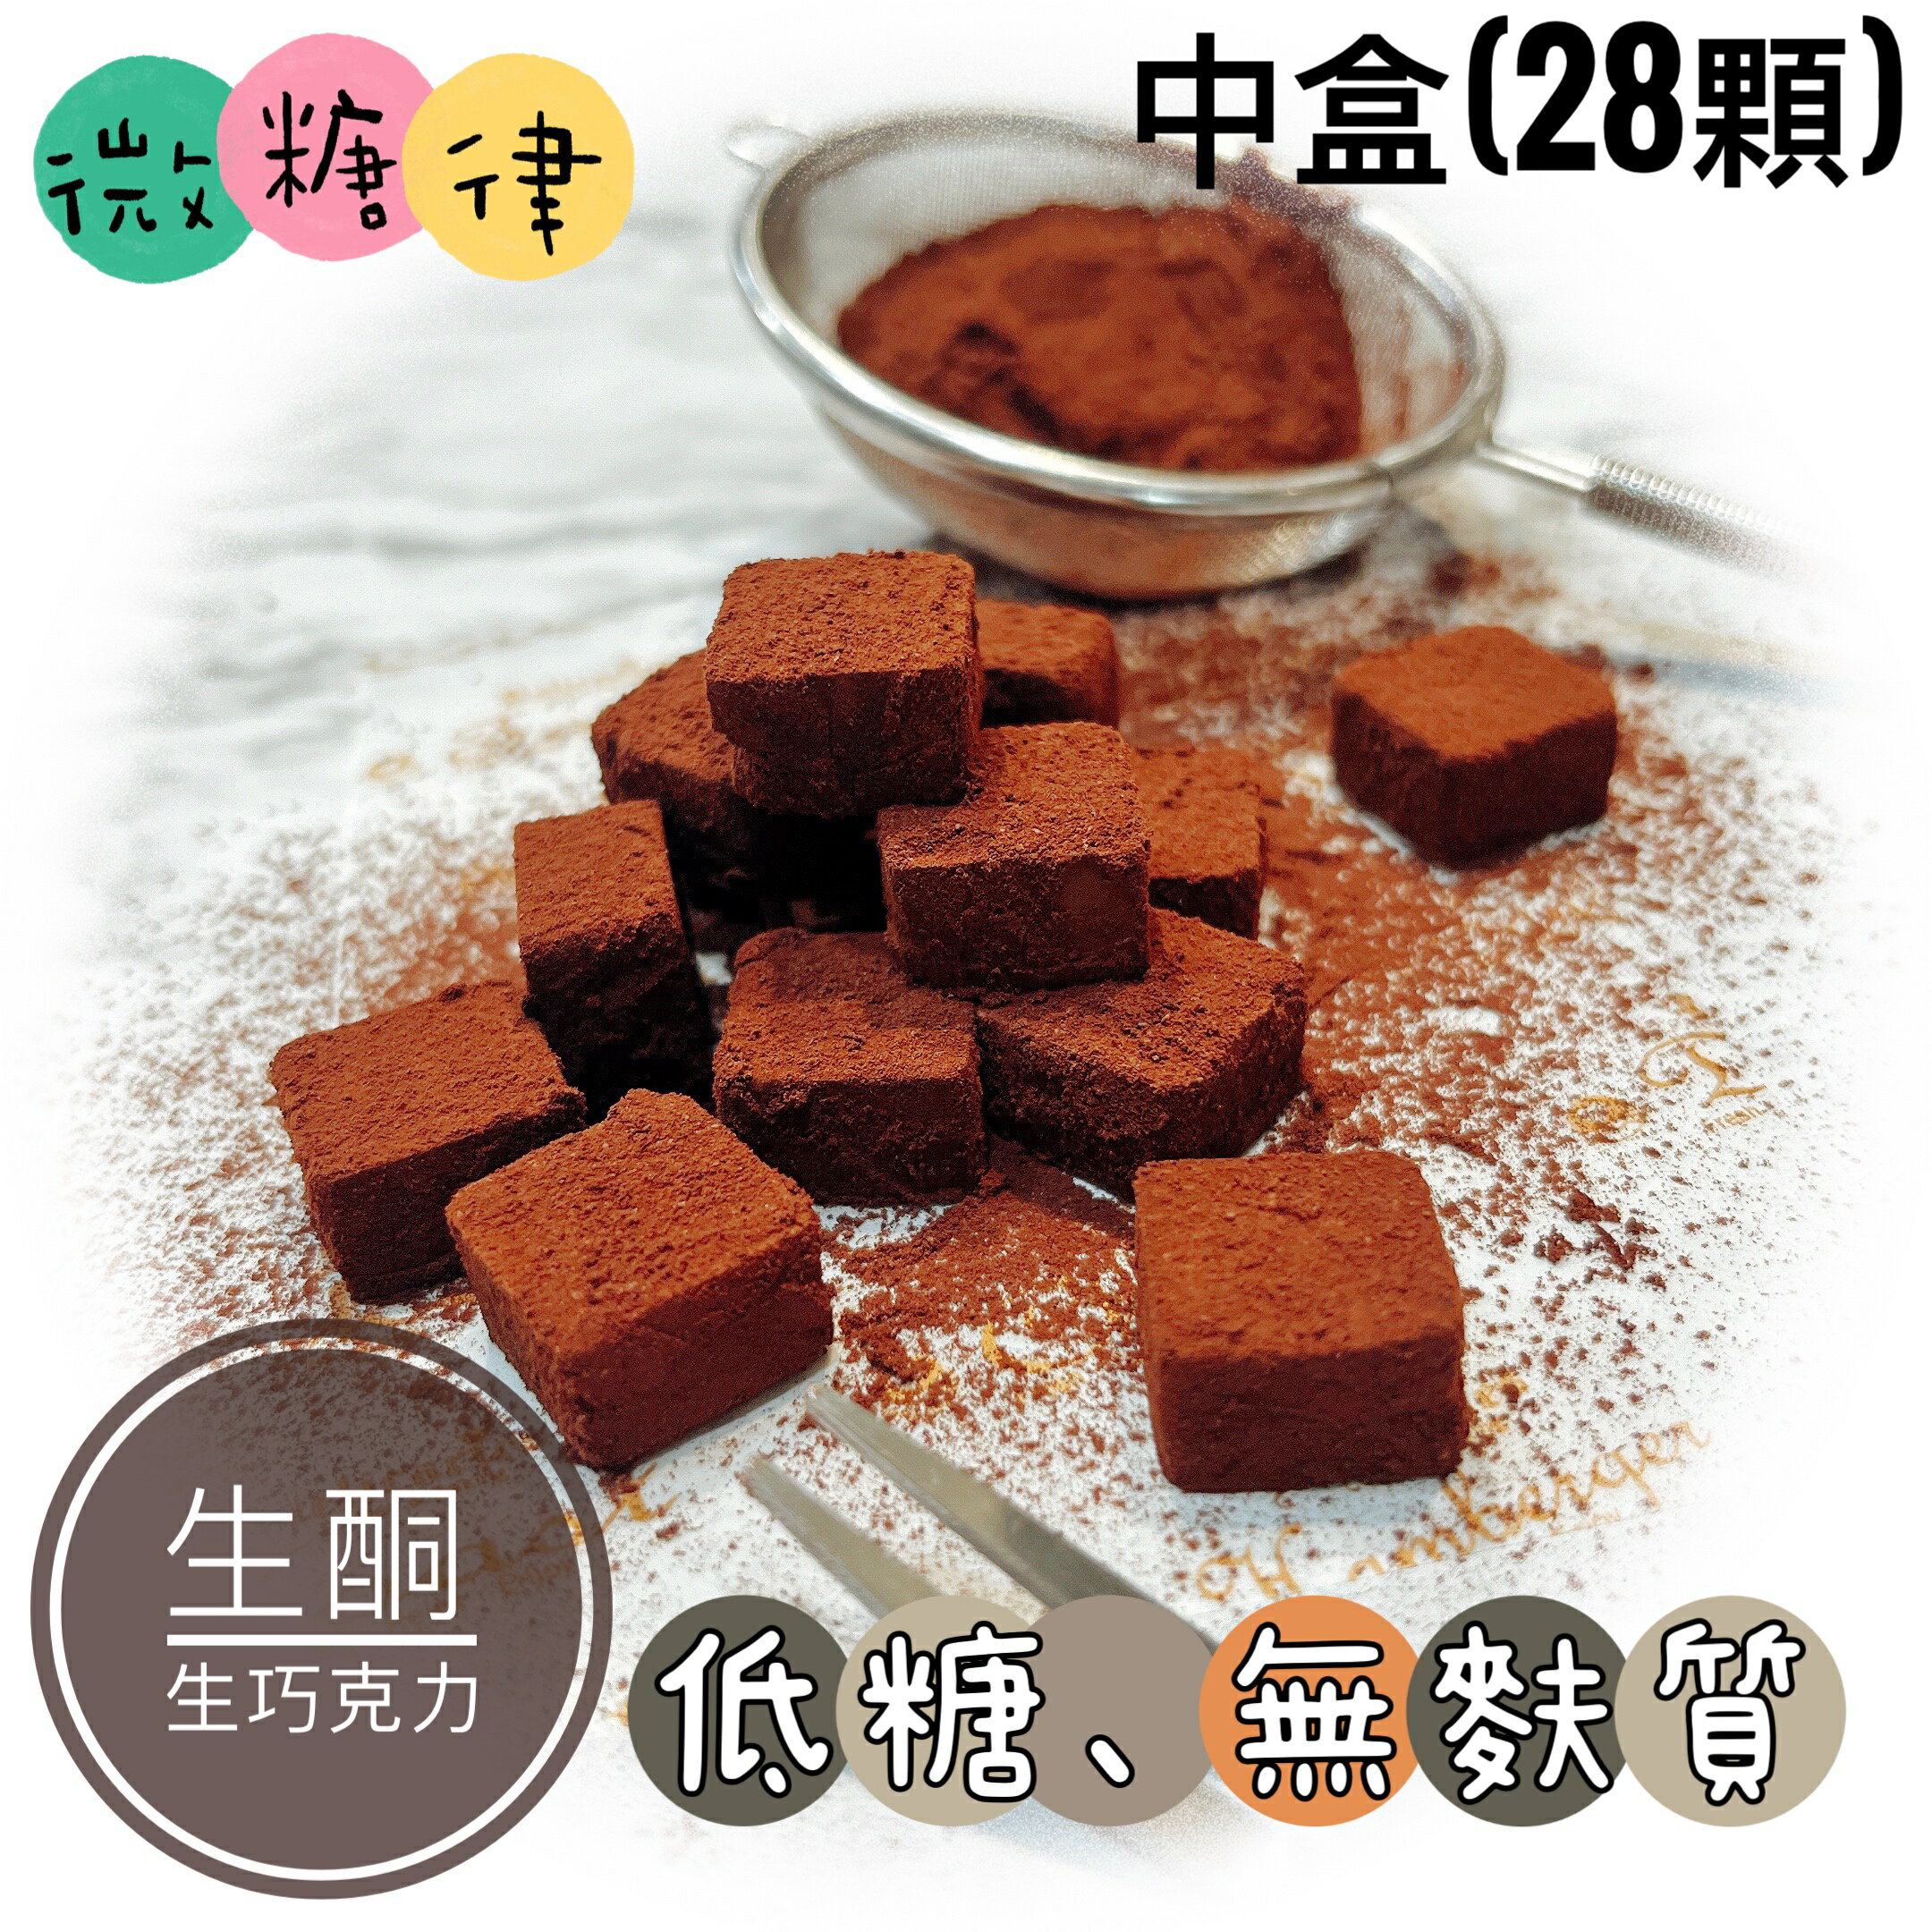 [微糖律]生酮生巧克力-M size(28顆)#低糖甜點#生酮甜點#無麩質#無麵粉